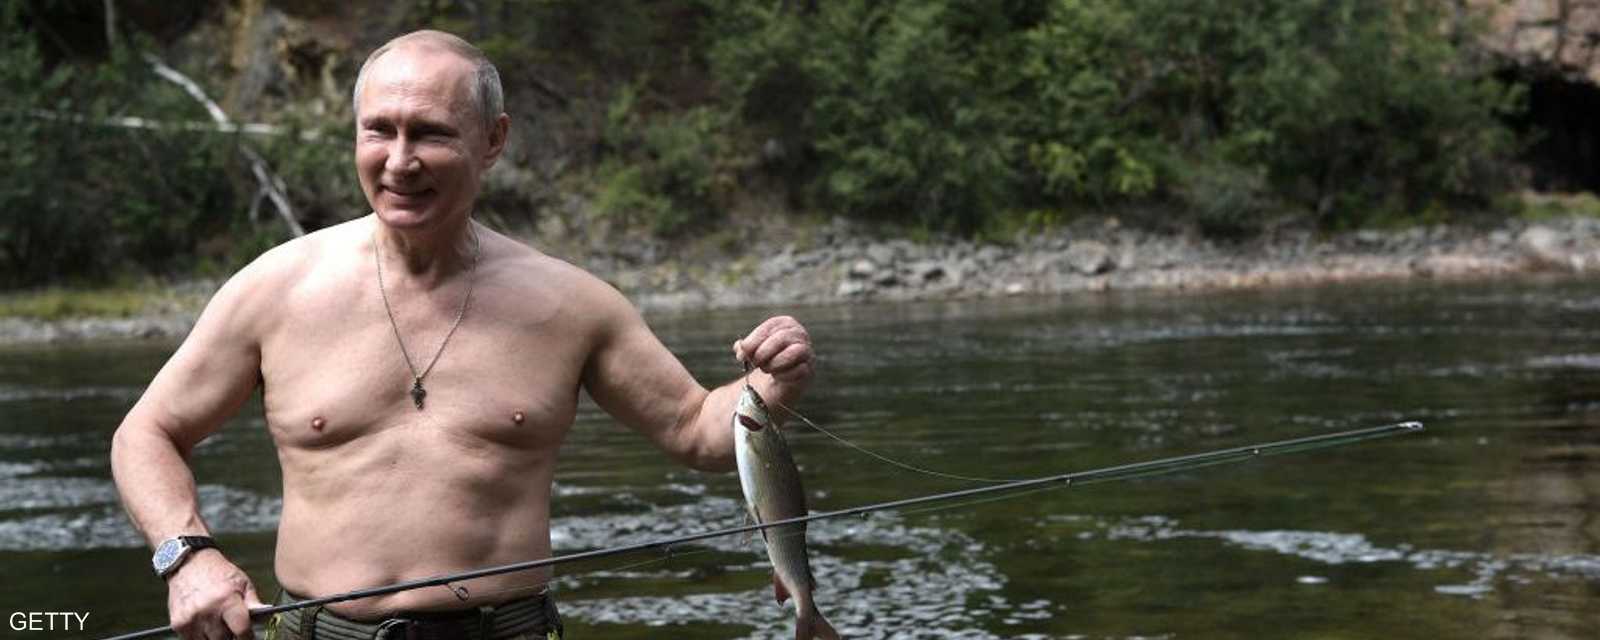 بوتن توجه إلى منطقة جبلية في سيبيريا للصيد